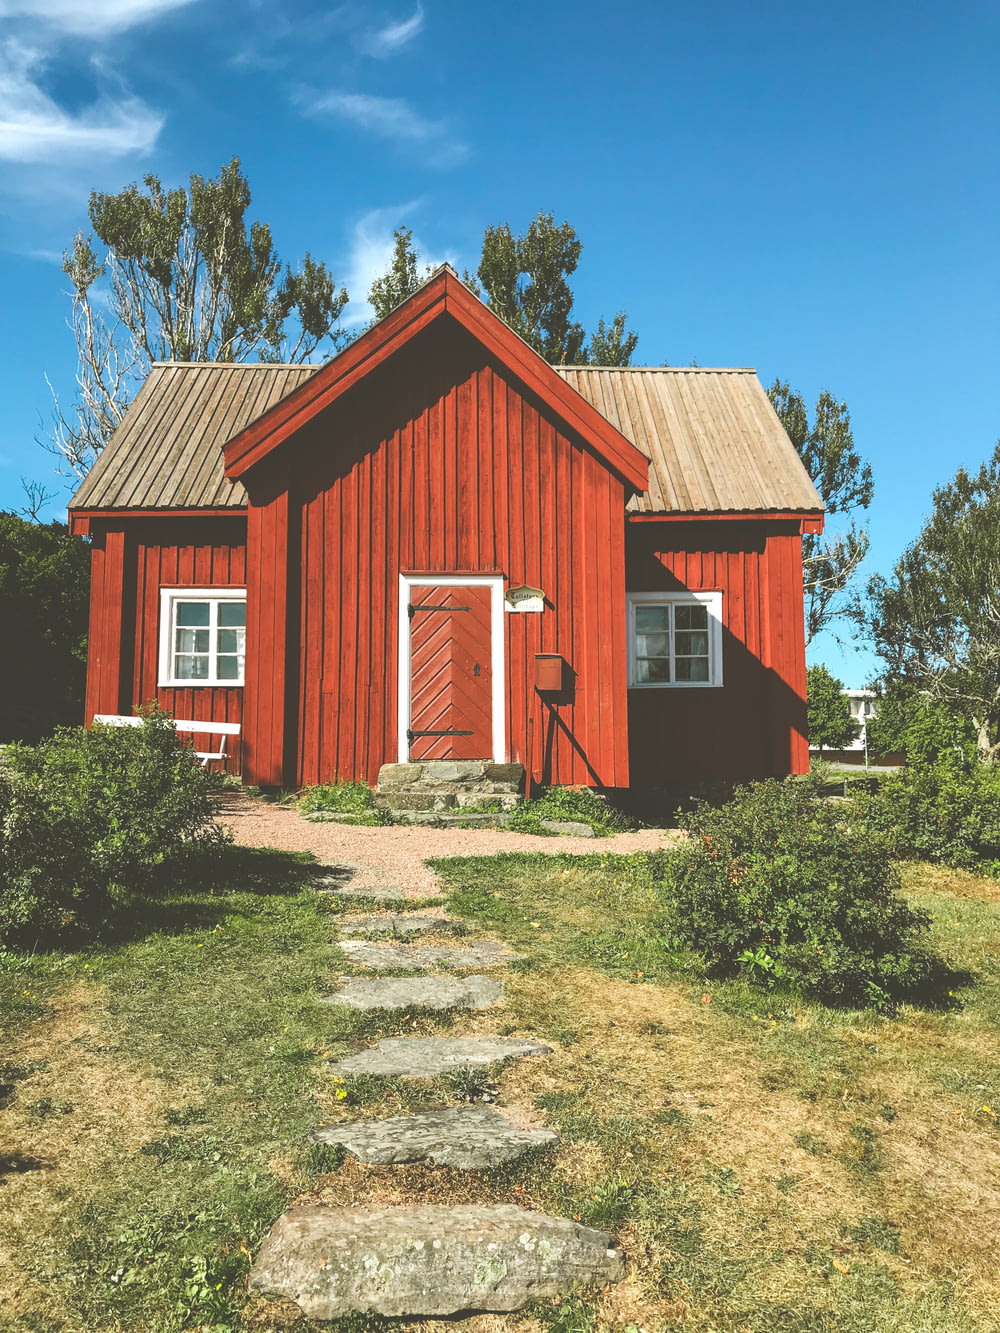 Casa de madeira vermelha e branca perto de árvores verdes sob o céu azul durante o dia